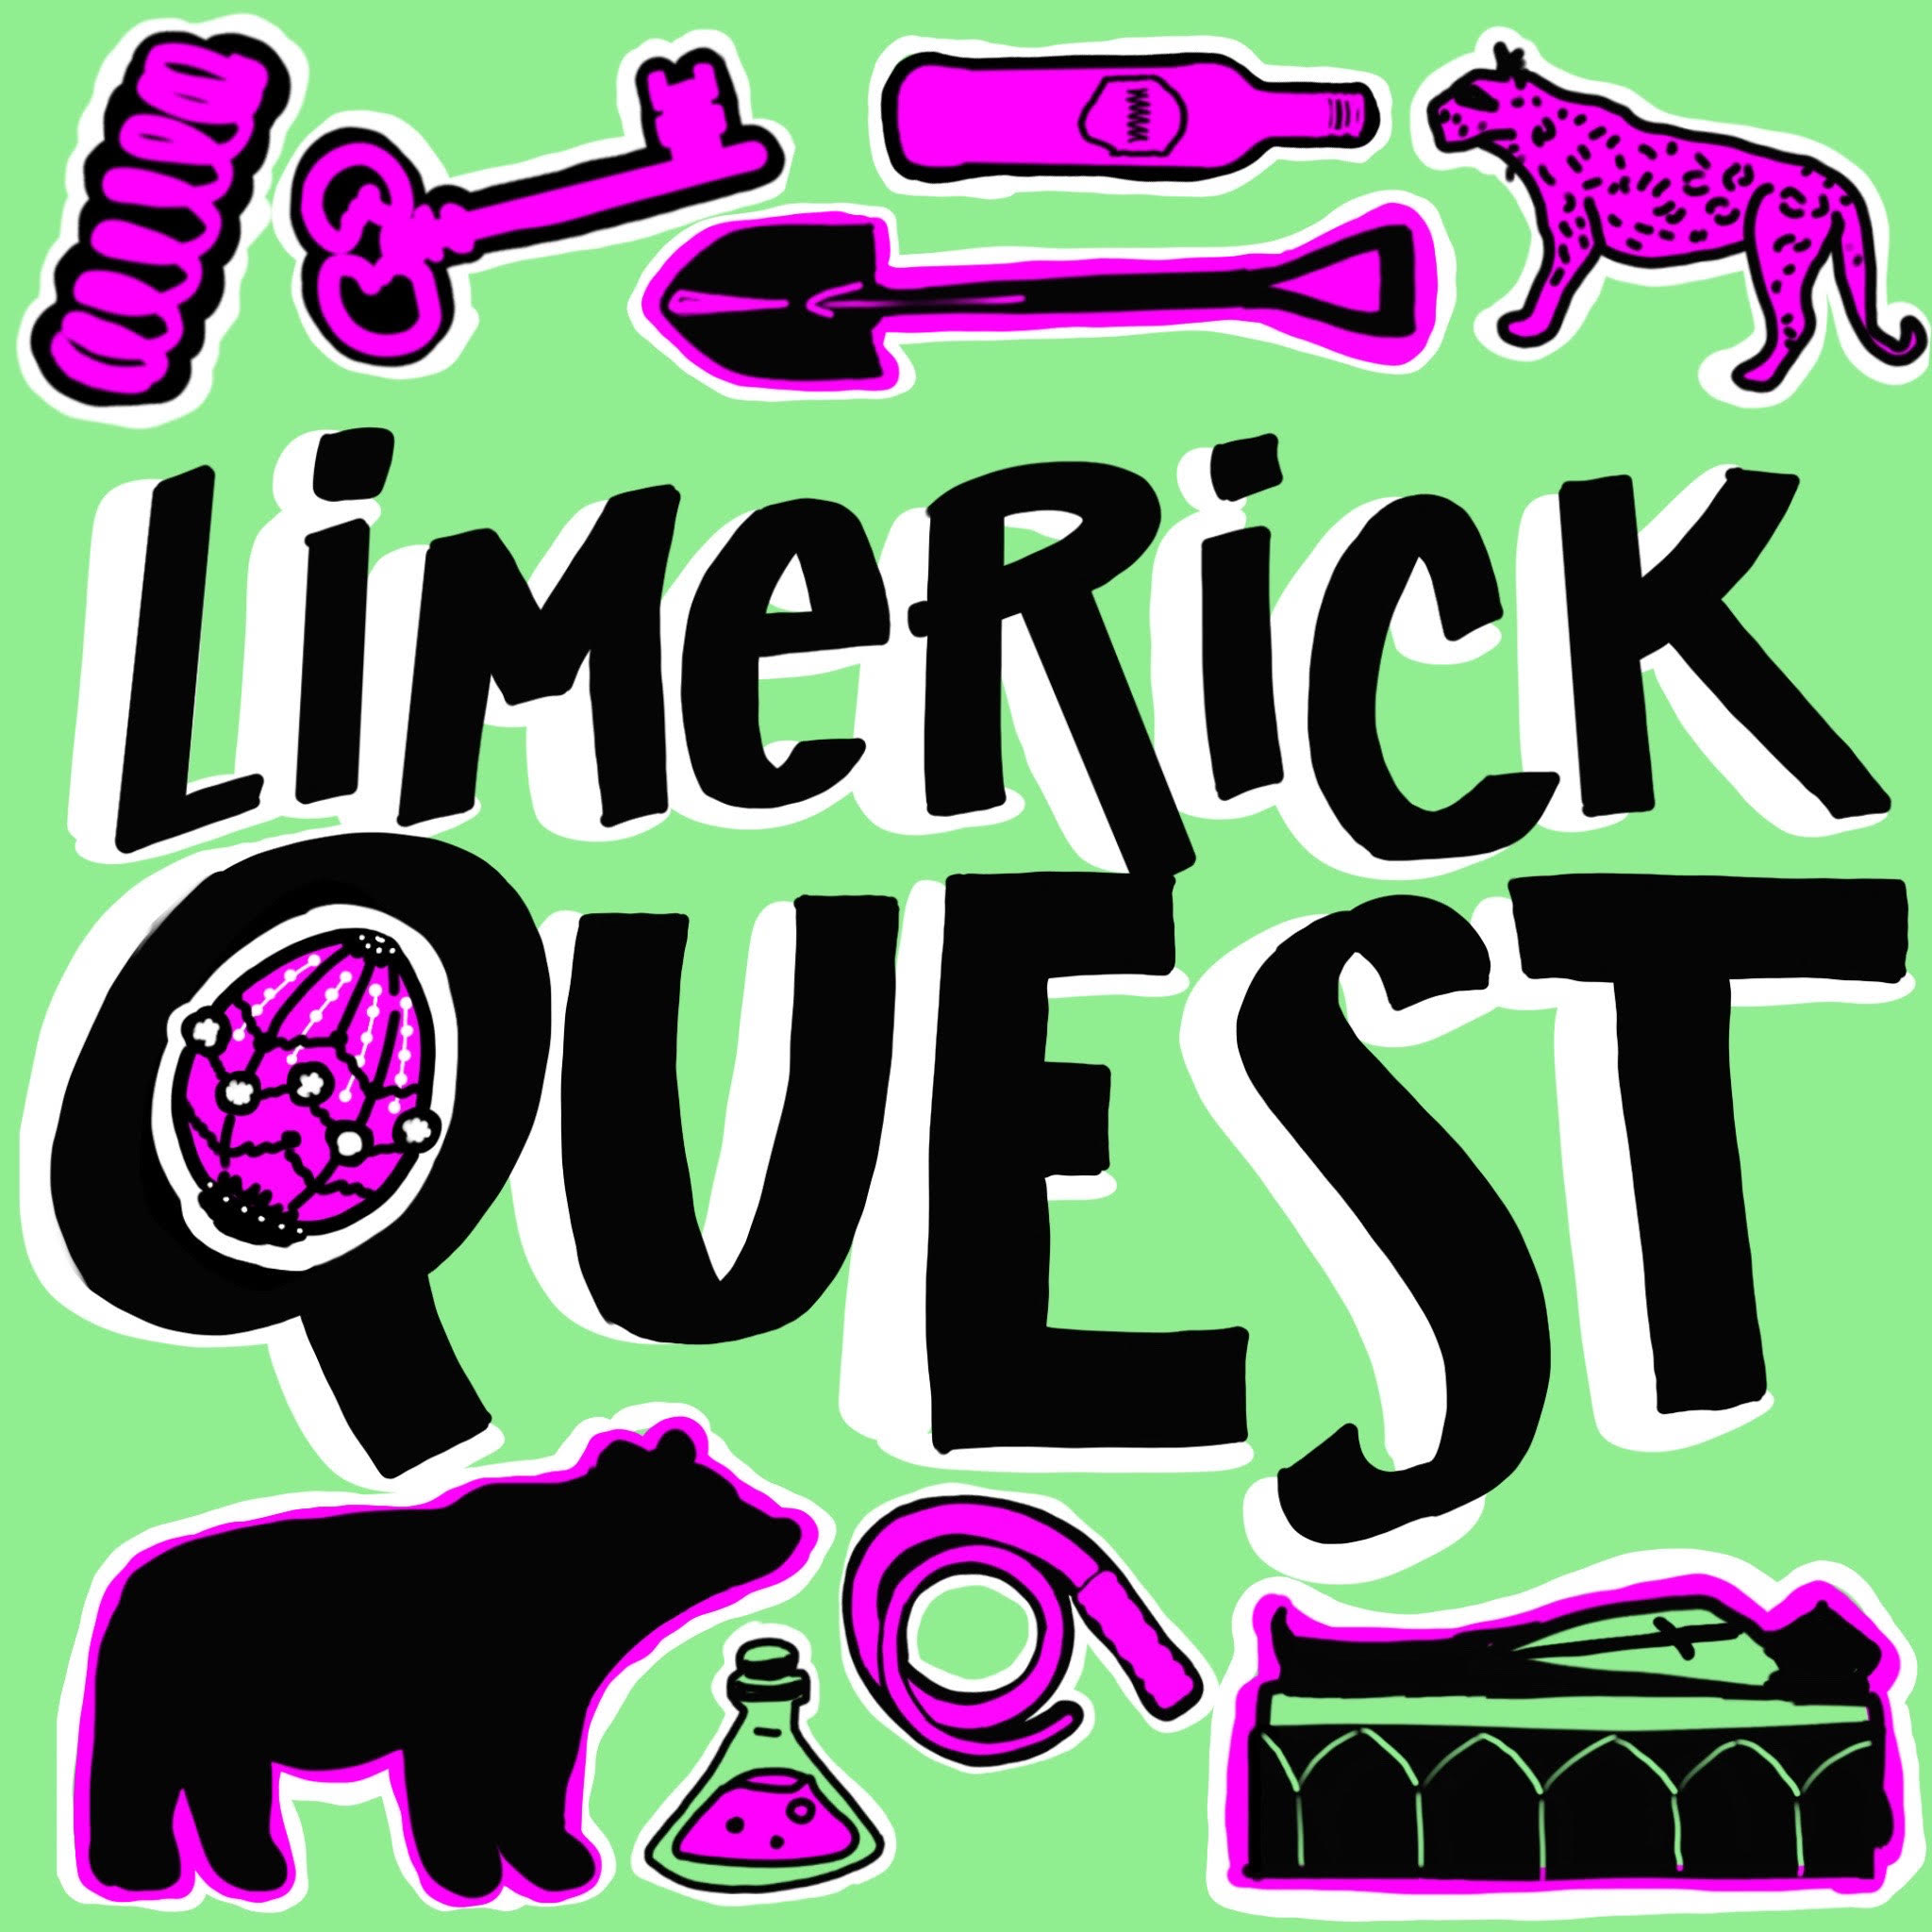 Limerick Quest